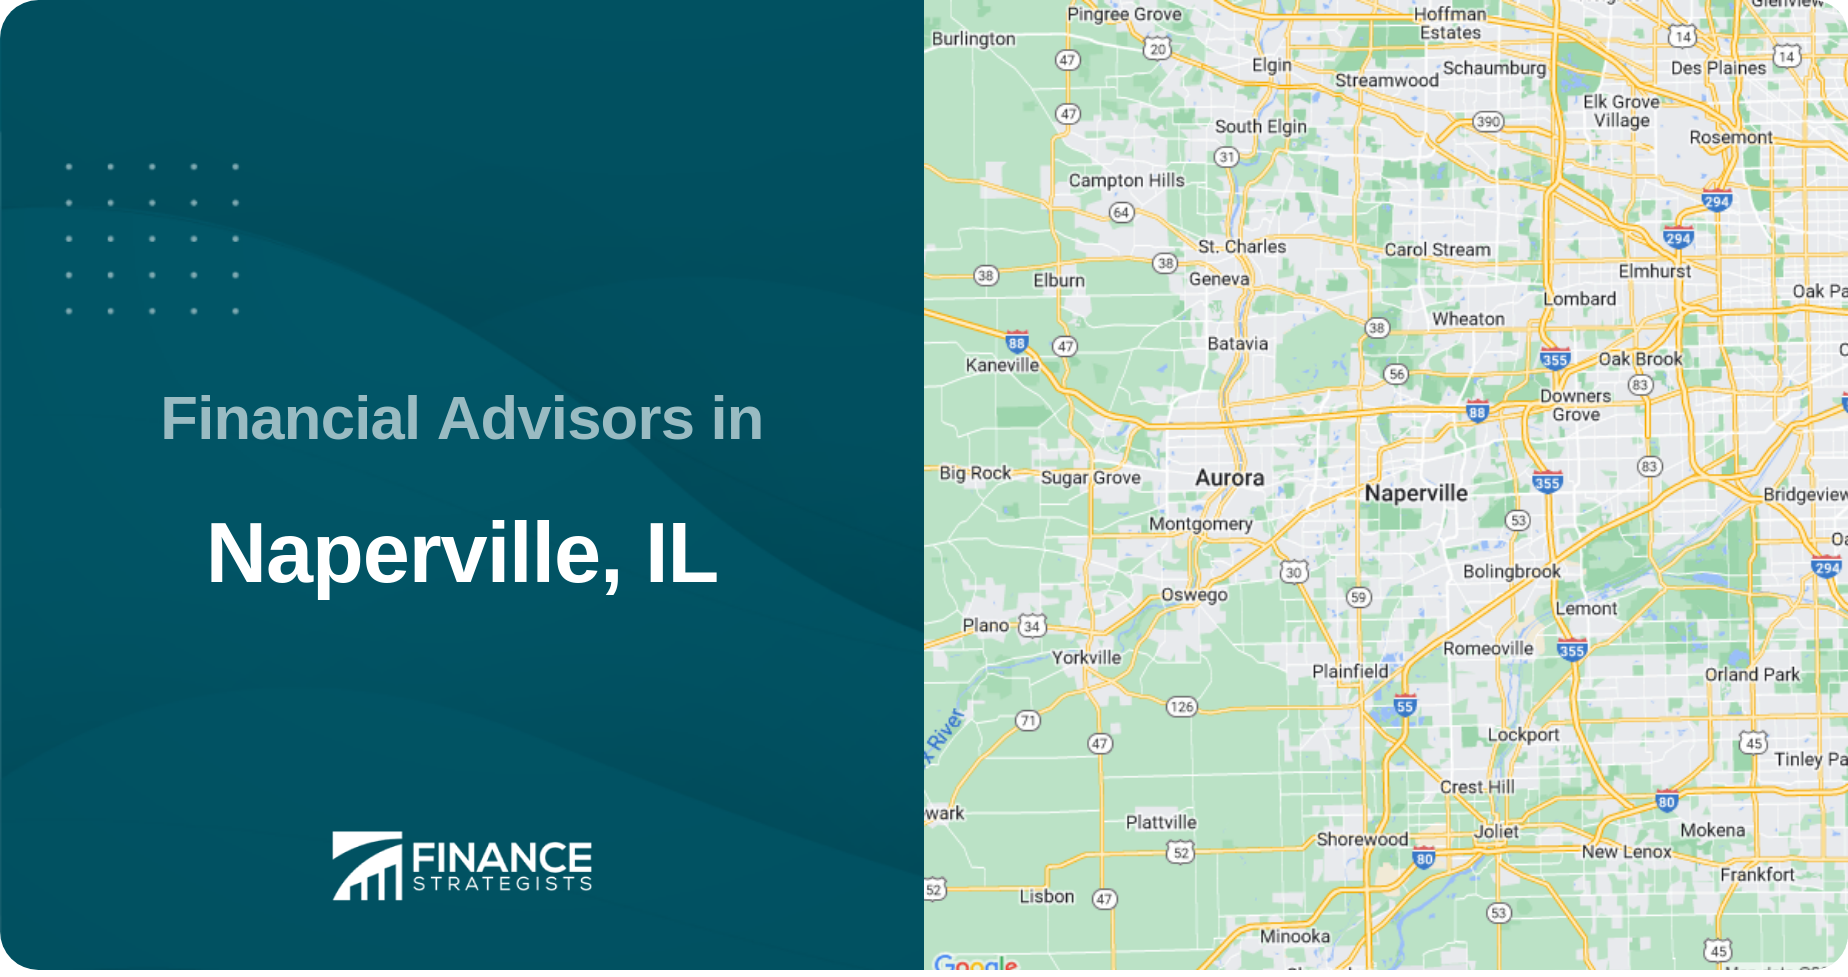 Financial Advisors in Naperville, IL